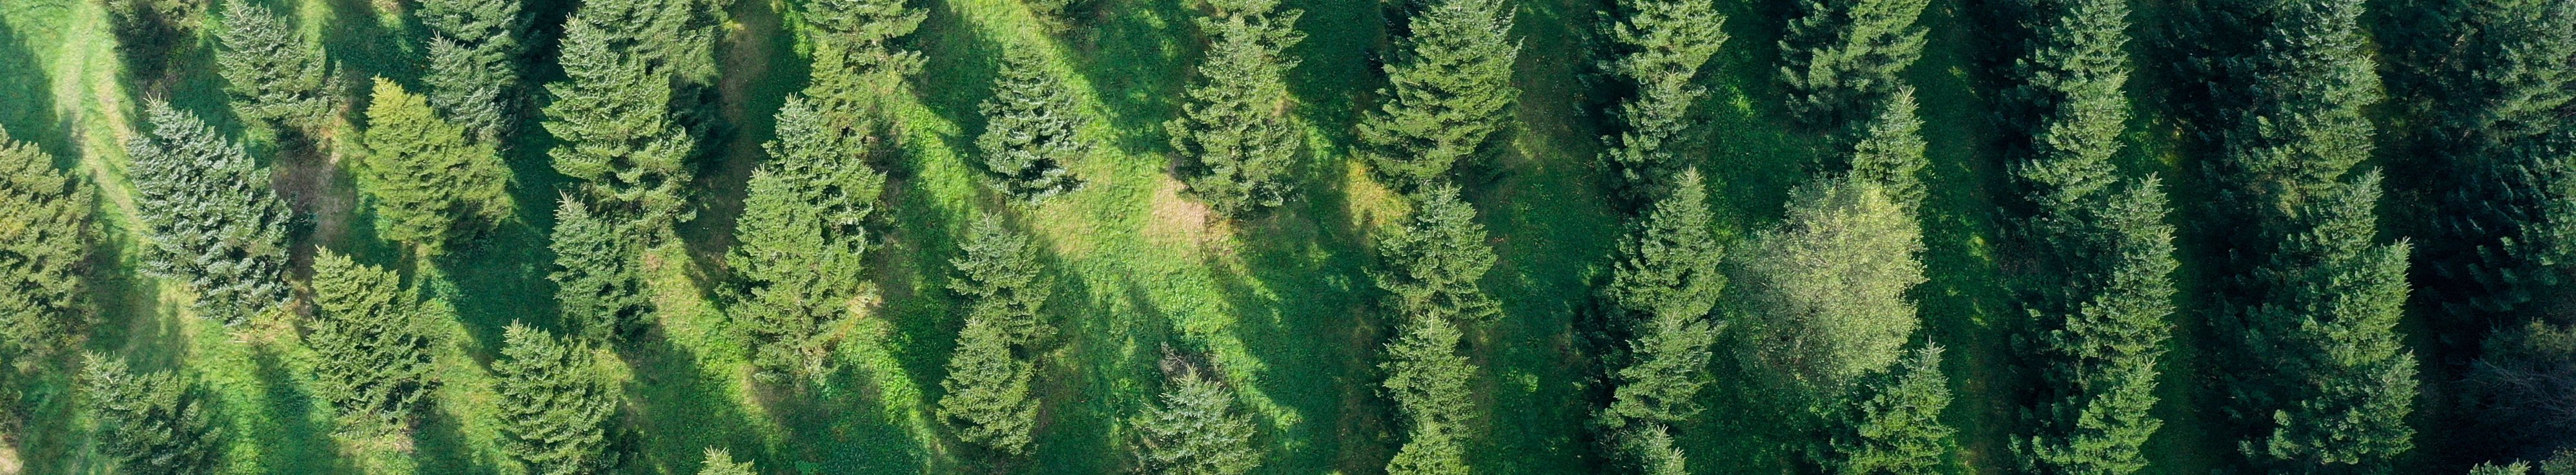 Luftbild einer Plantage aus Nadelbäumen, die in weitem Abstand zueinander stehen